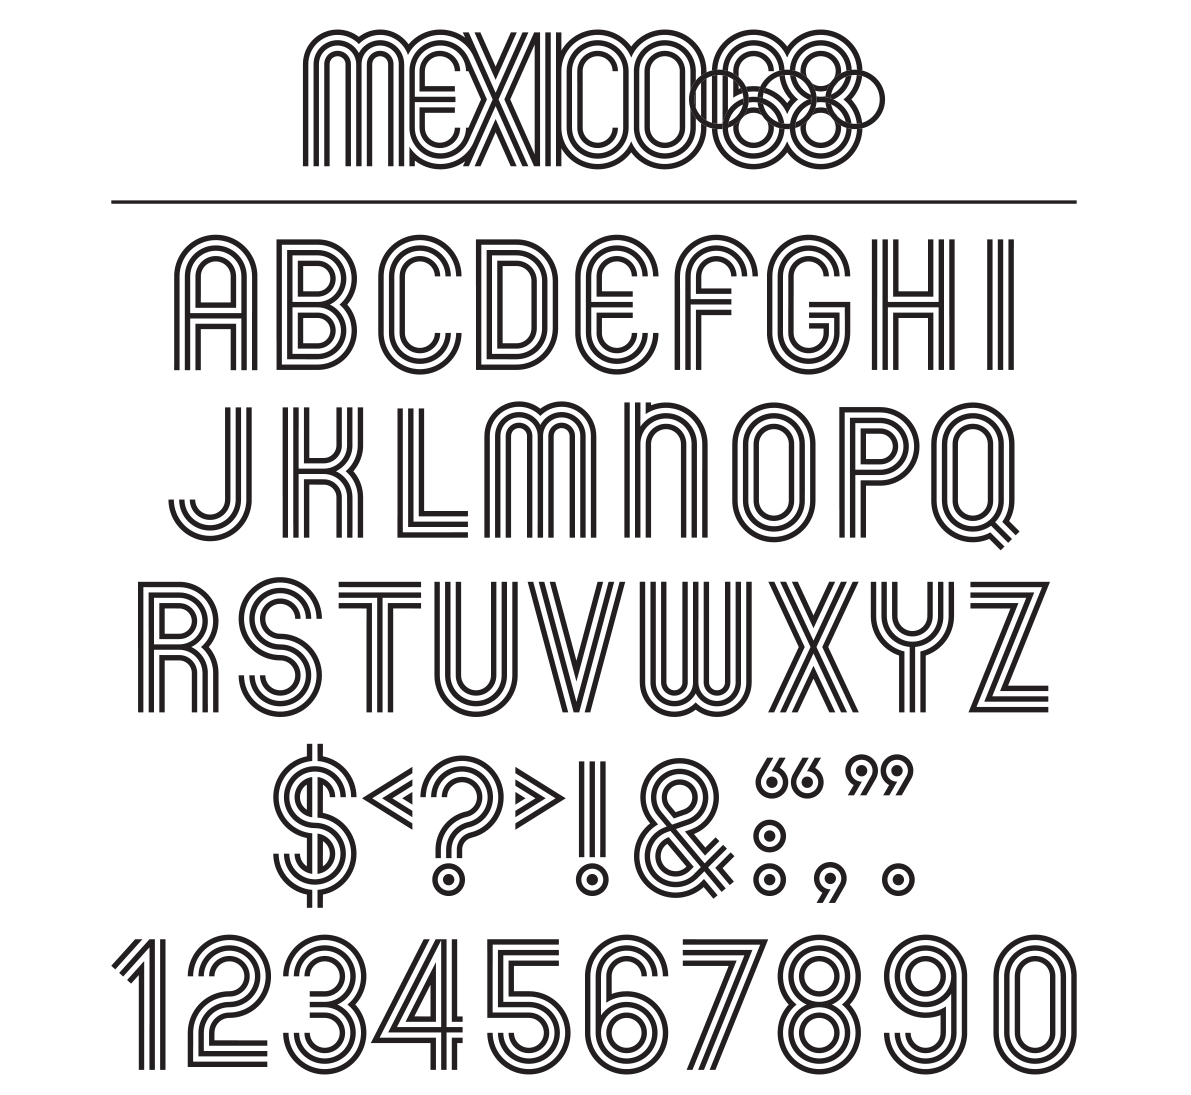 Wyman_Olympic_typeface